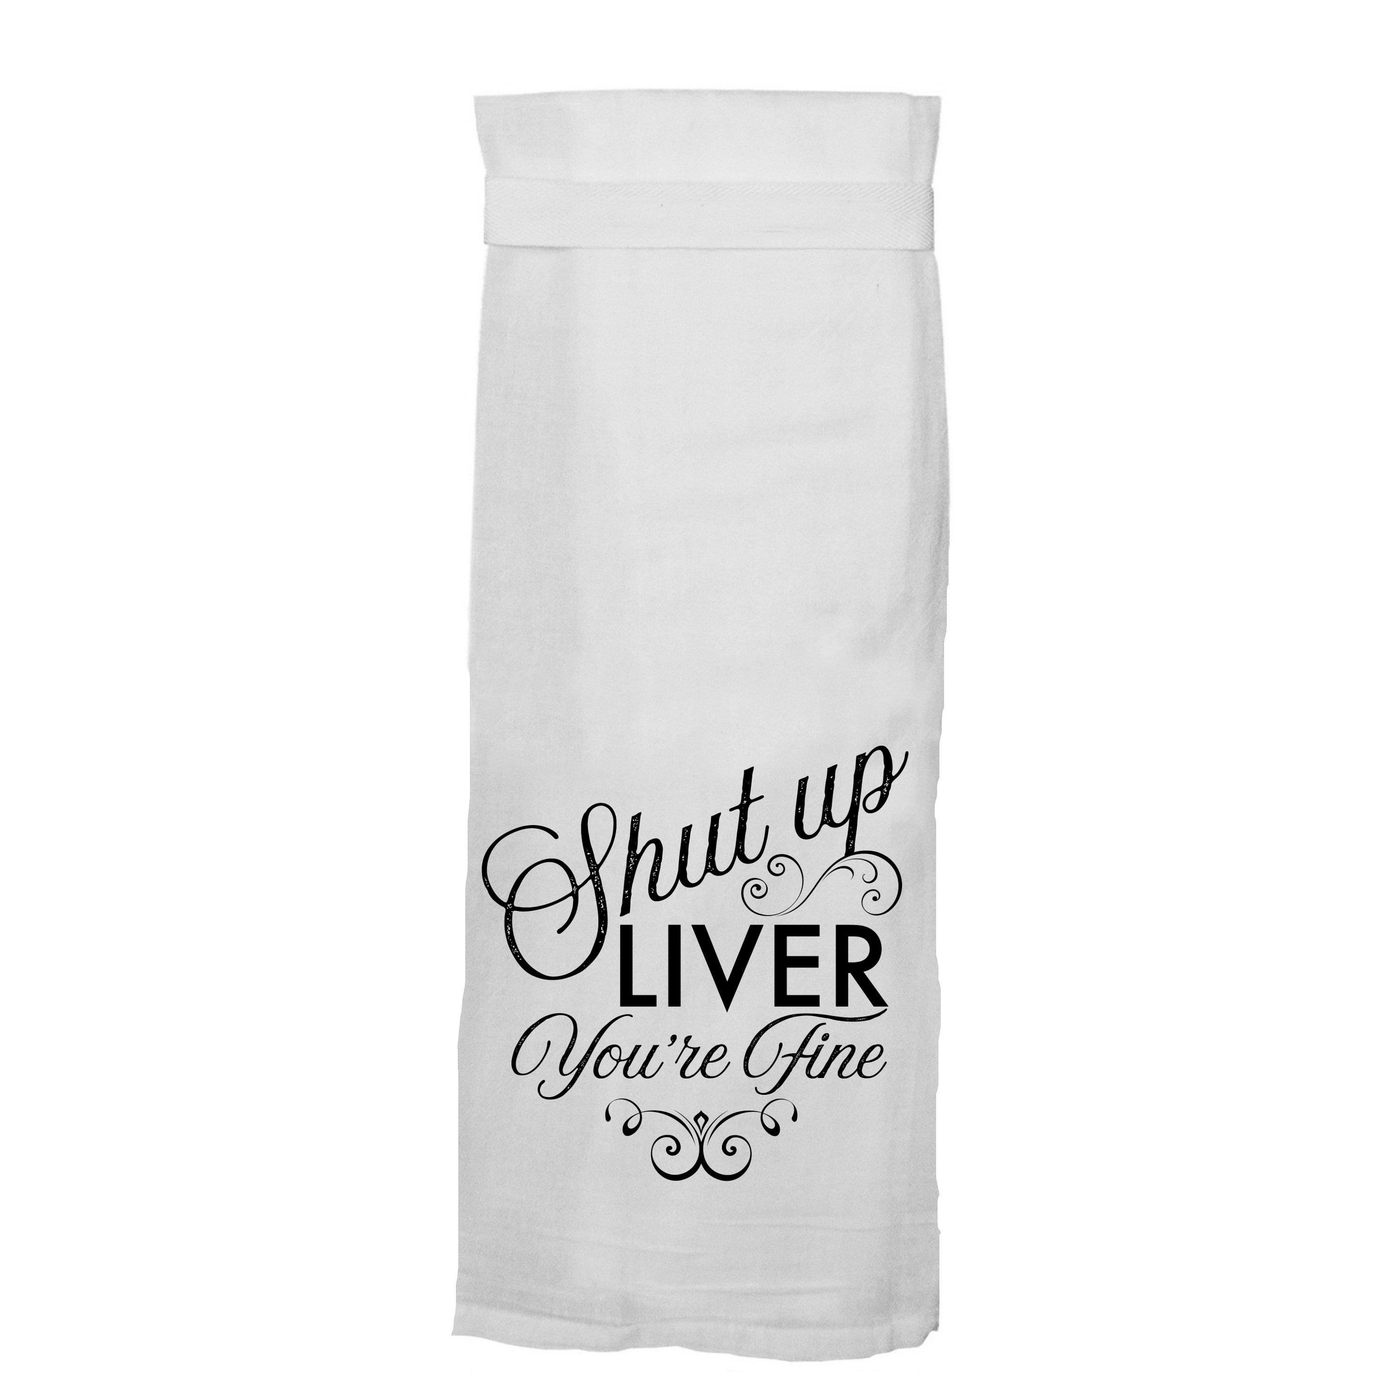 Shut Up Liver Tea Towel towel